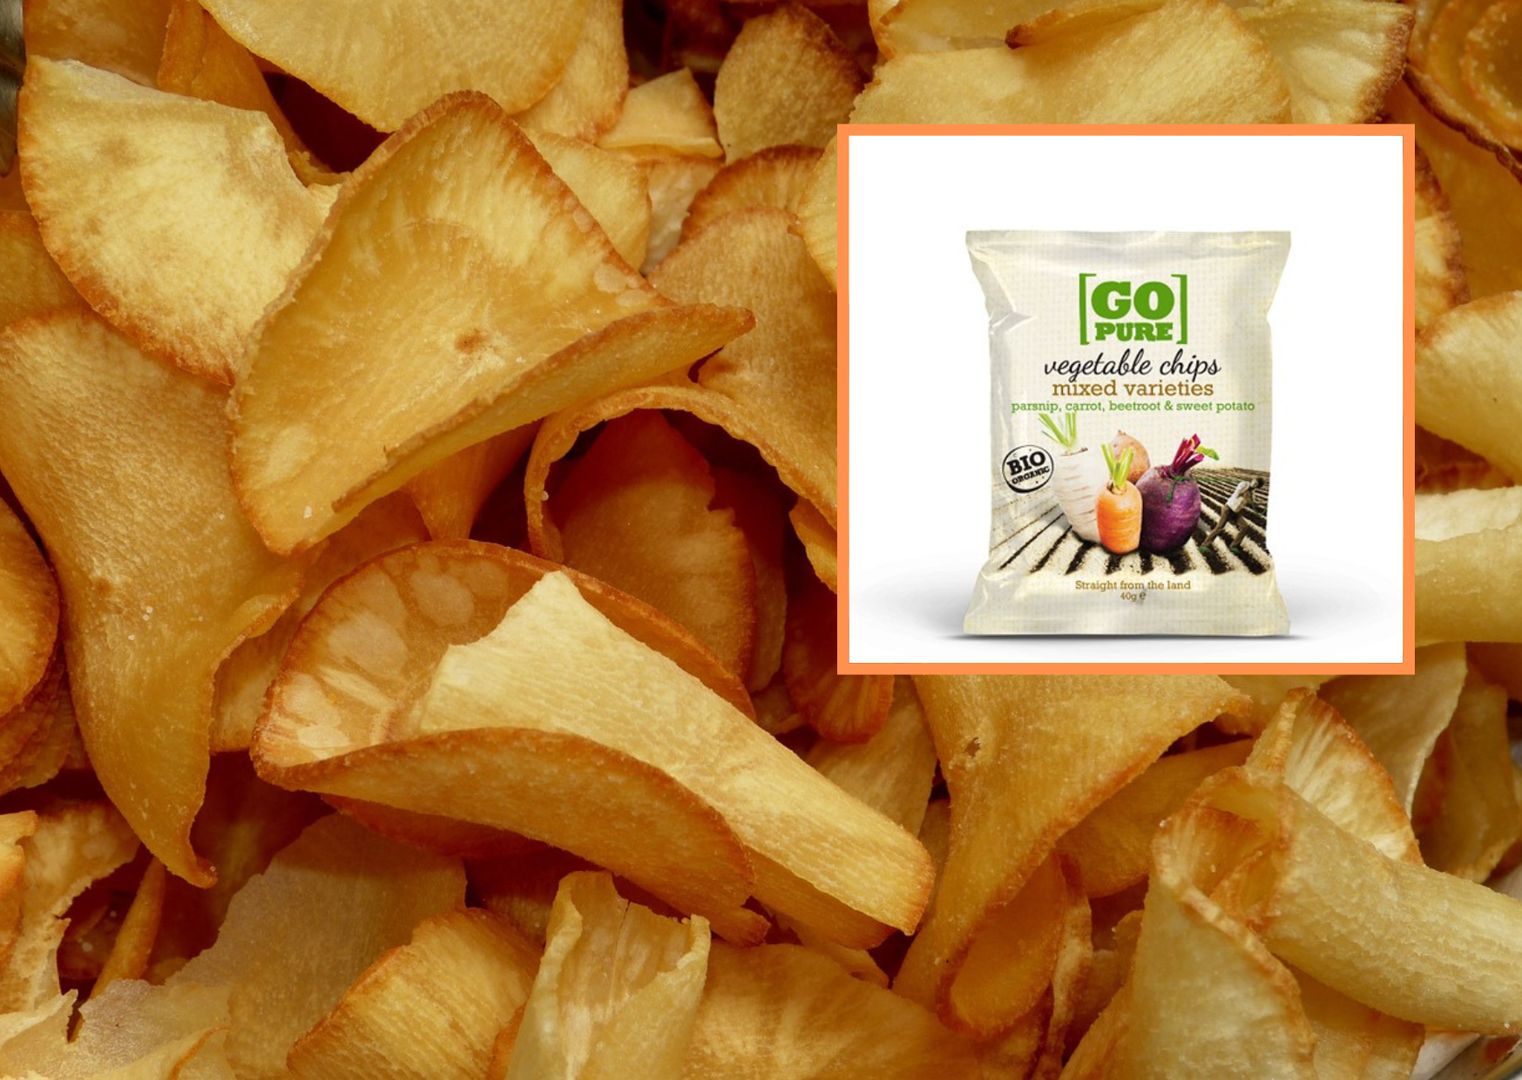 Popularne chipsy wycofane ze sprzedaży. GIS ostrzega przed rakotwórczą substancją